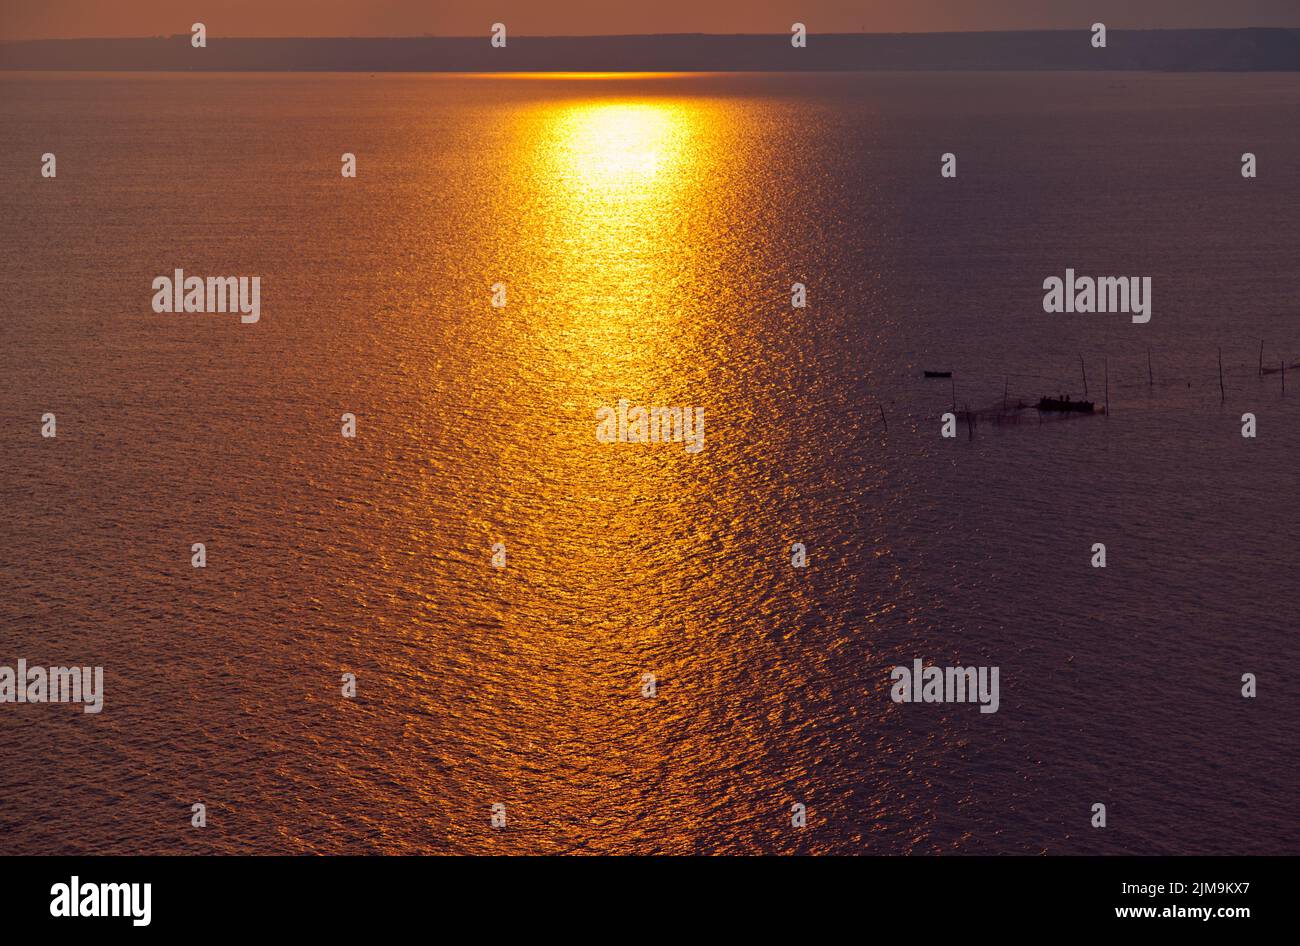 Sunset sunrise water sea ocean Stock Photo